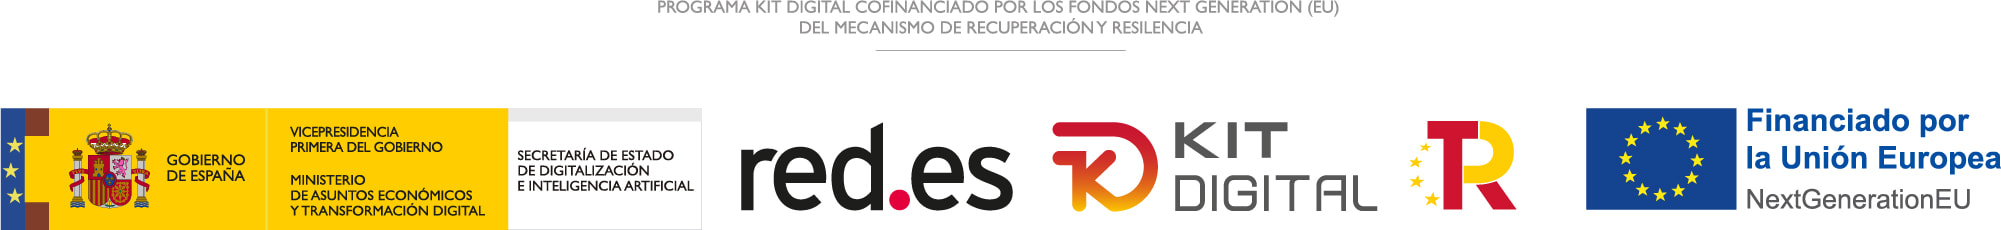 Programa Kit Digital cofinanciado por los Fondos Next Generation (EU) del mecanismo de recuperación y resiliencia